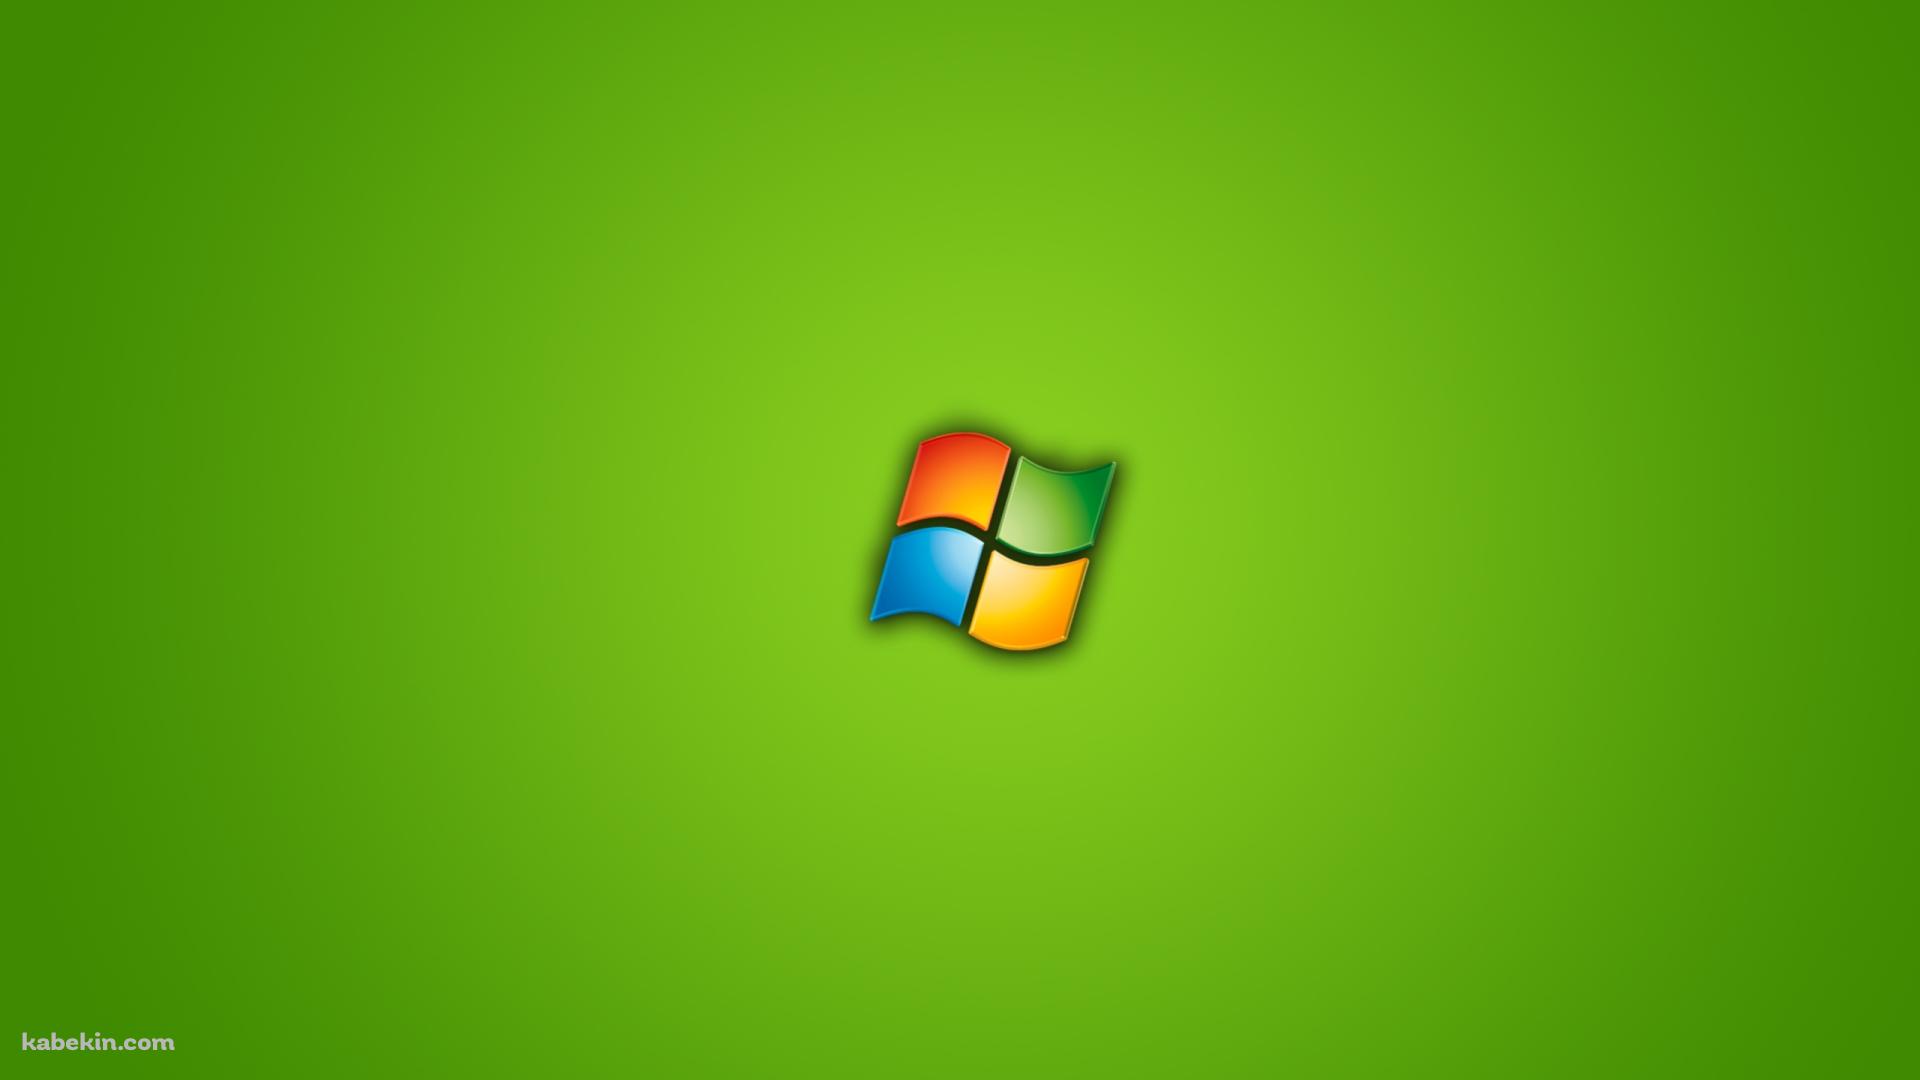 ウィンドウズ Windows ロゴの壁紙(1920px x 1080px) 高画質 PC・デスクトップ用